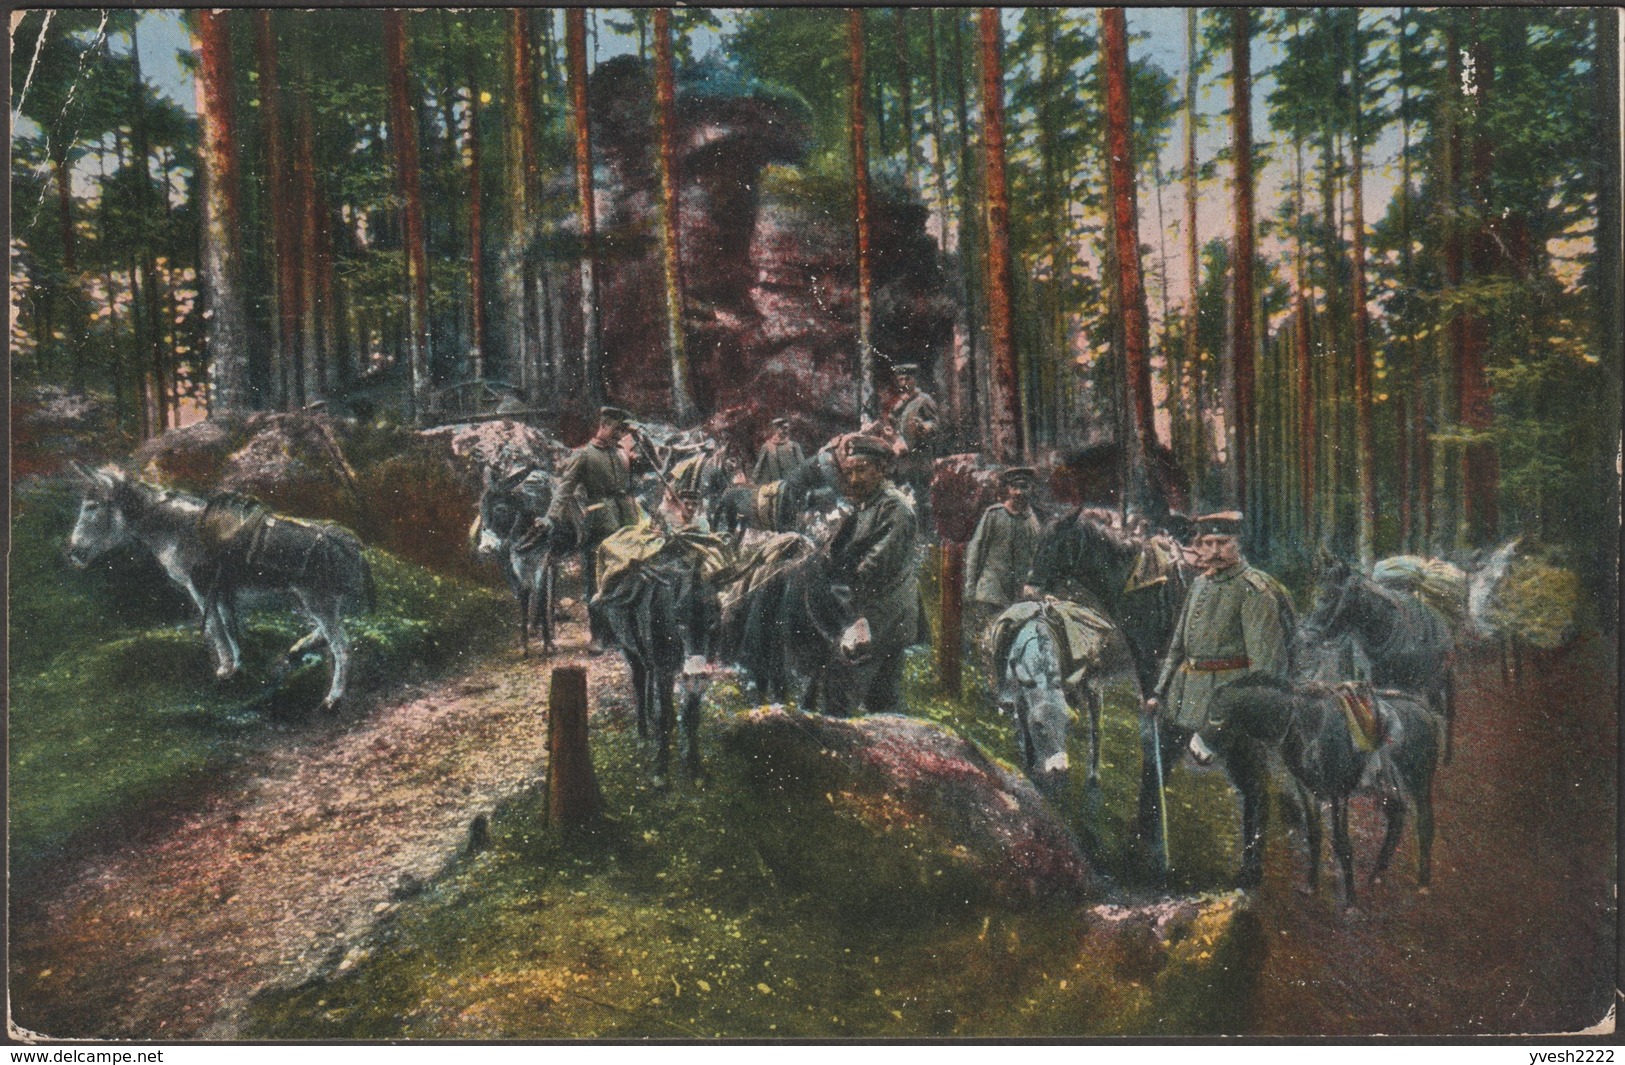 Allemagne 1916. Carte De Franchise Militaire. Images De Guerre Des Vosges. Groupe D'ânes Et De Mulets - Asini